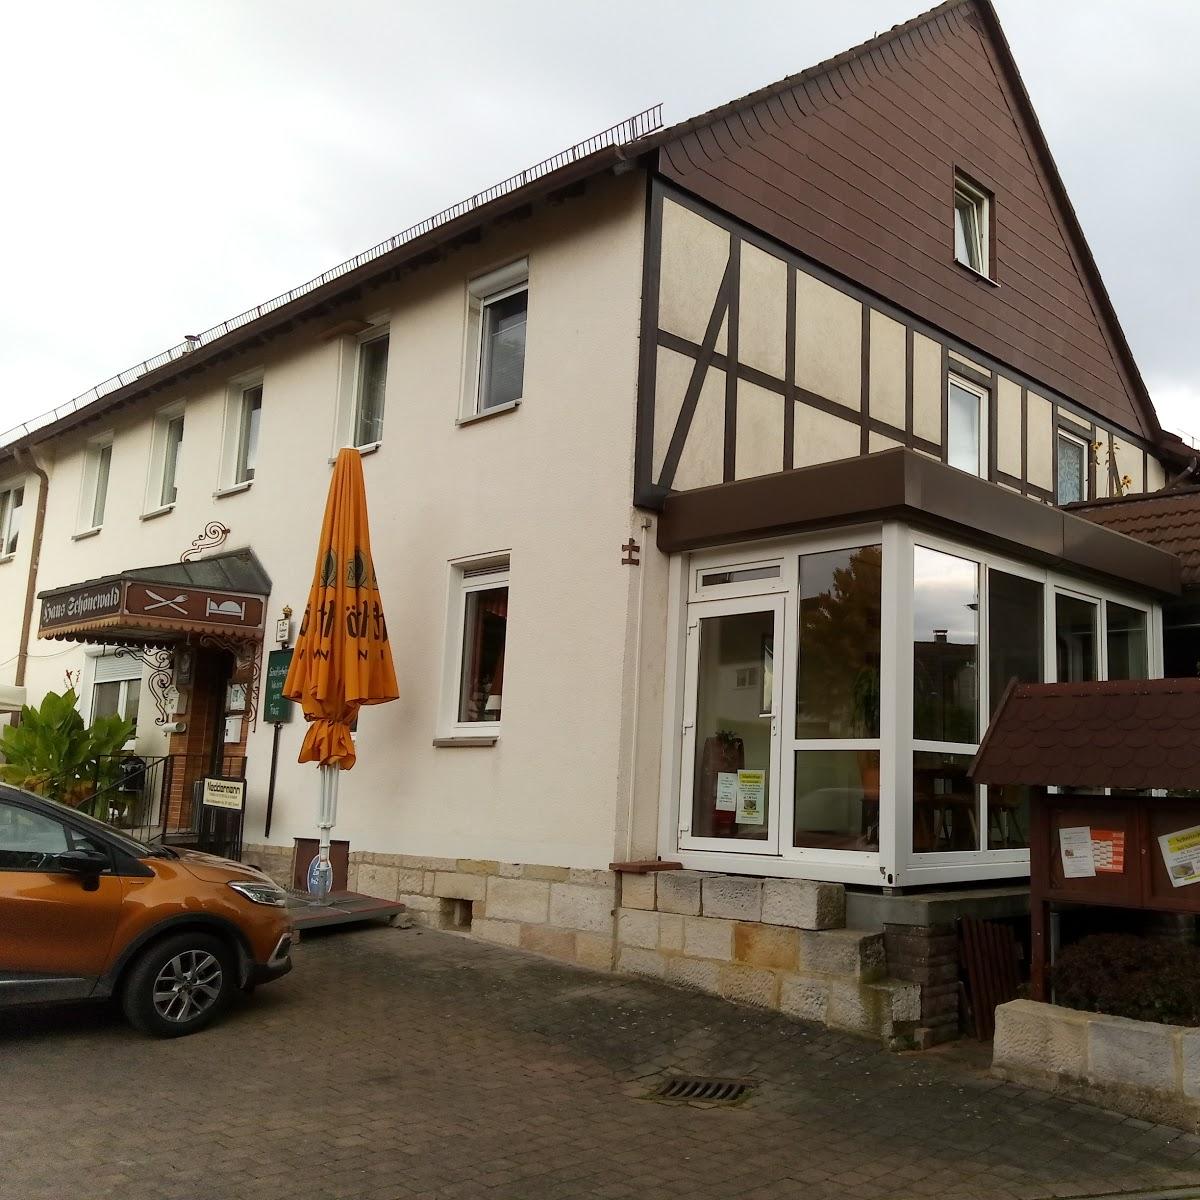 Restaurant "Haus Schönewald GmbH" in Fuldatal